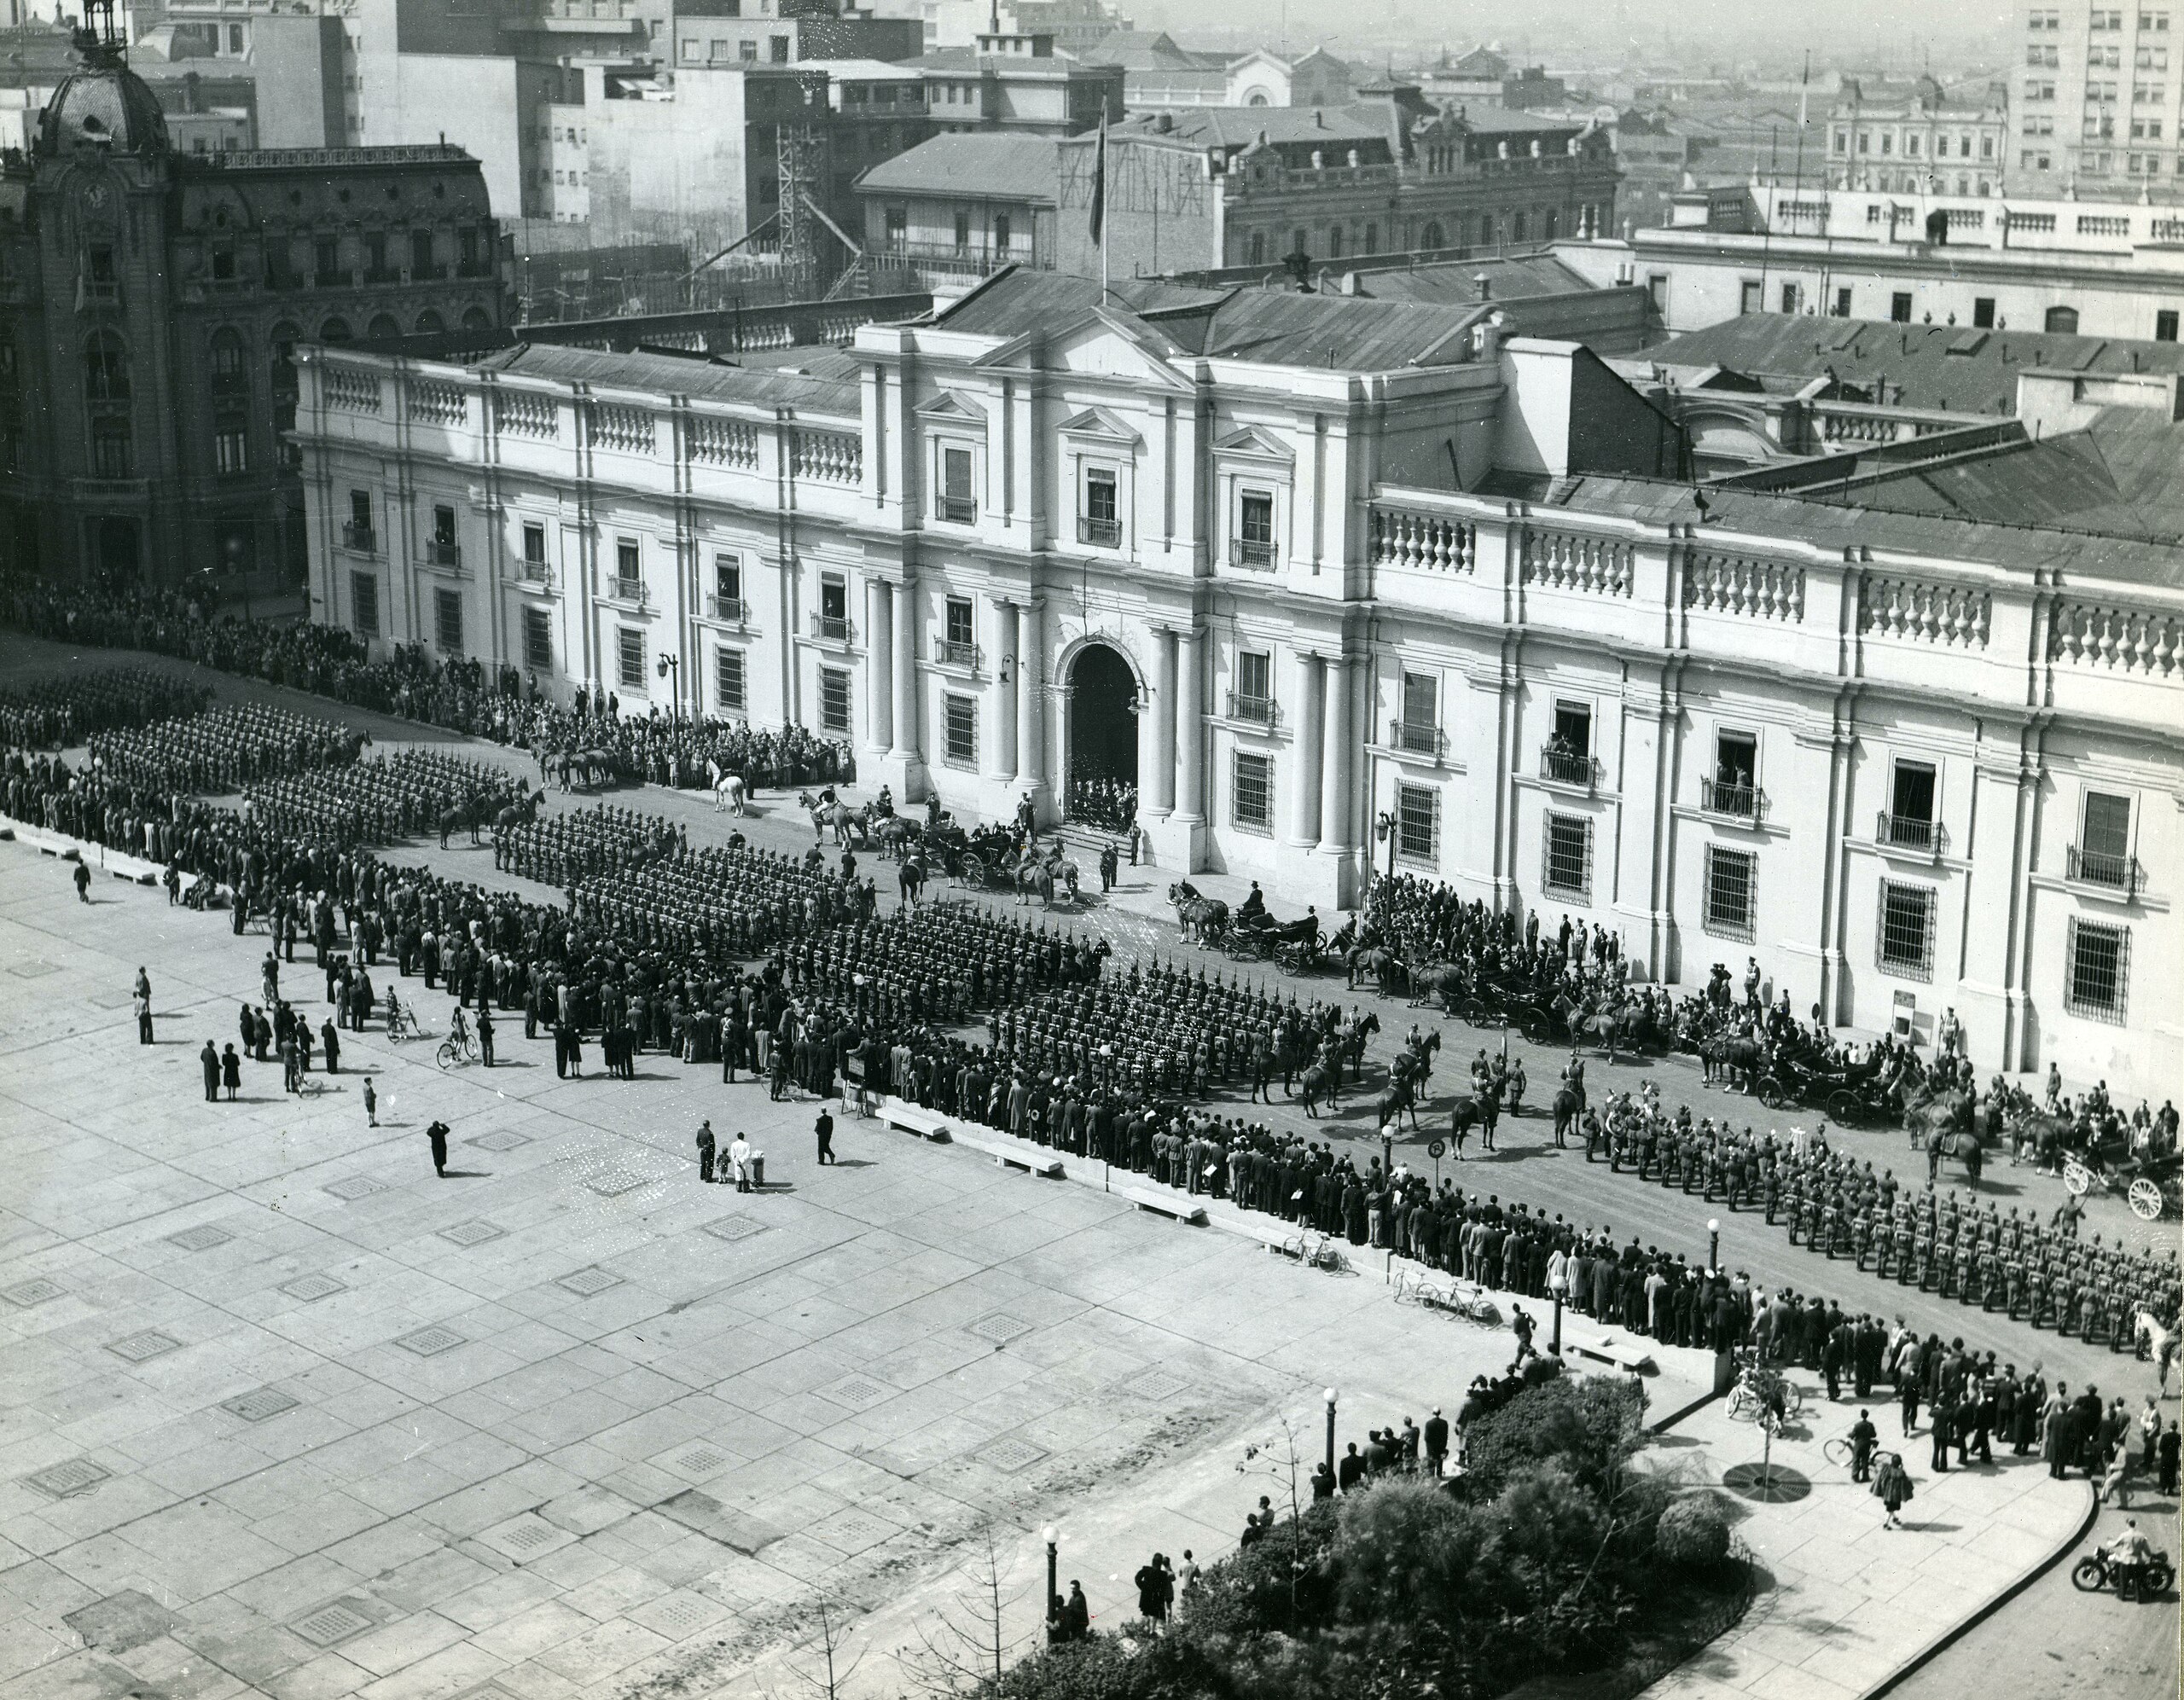 Military parade in front of the Palacio de La Moneda in 1944